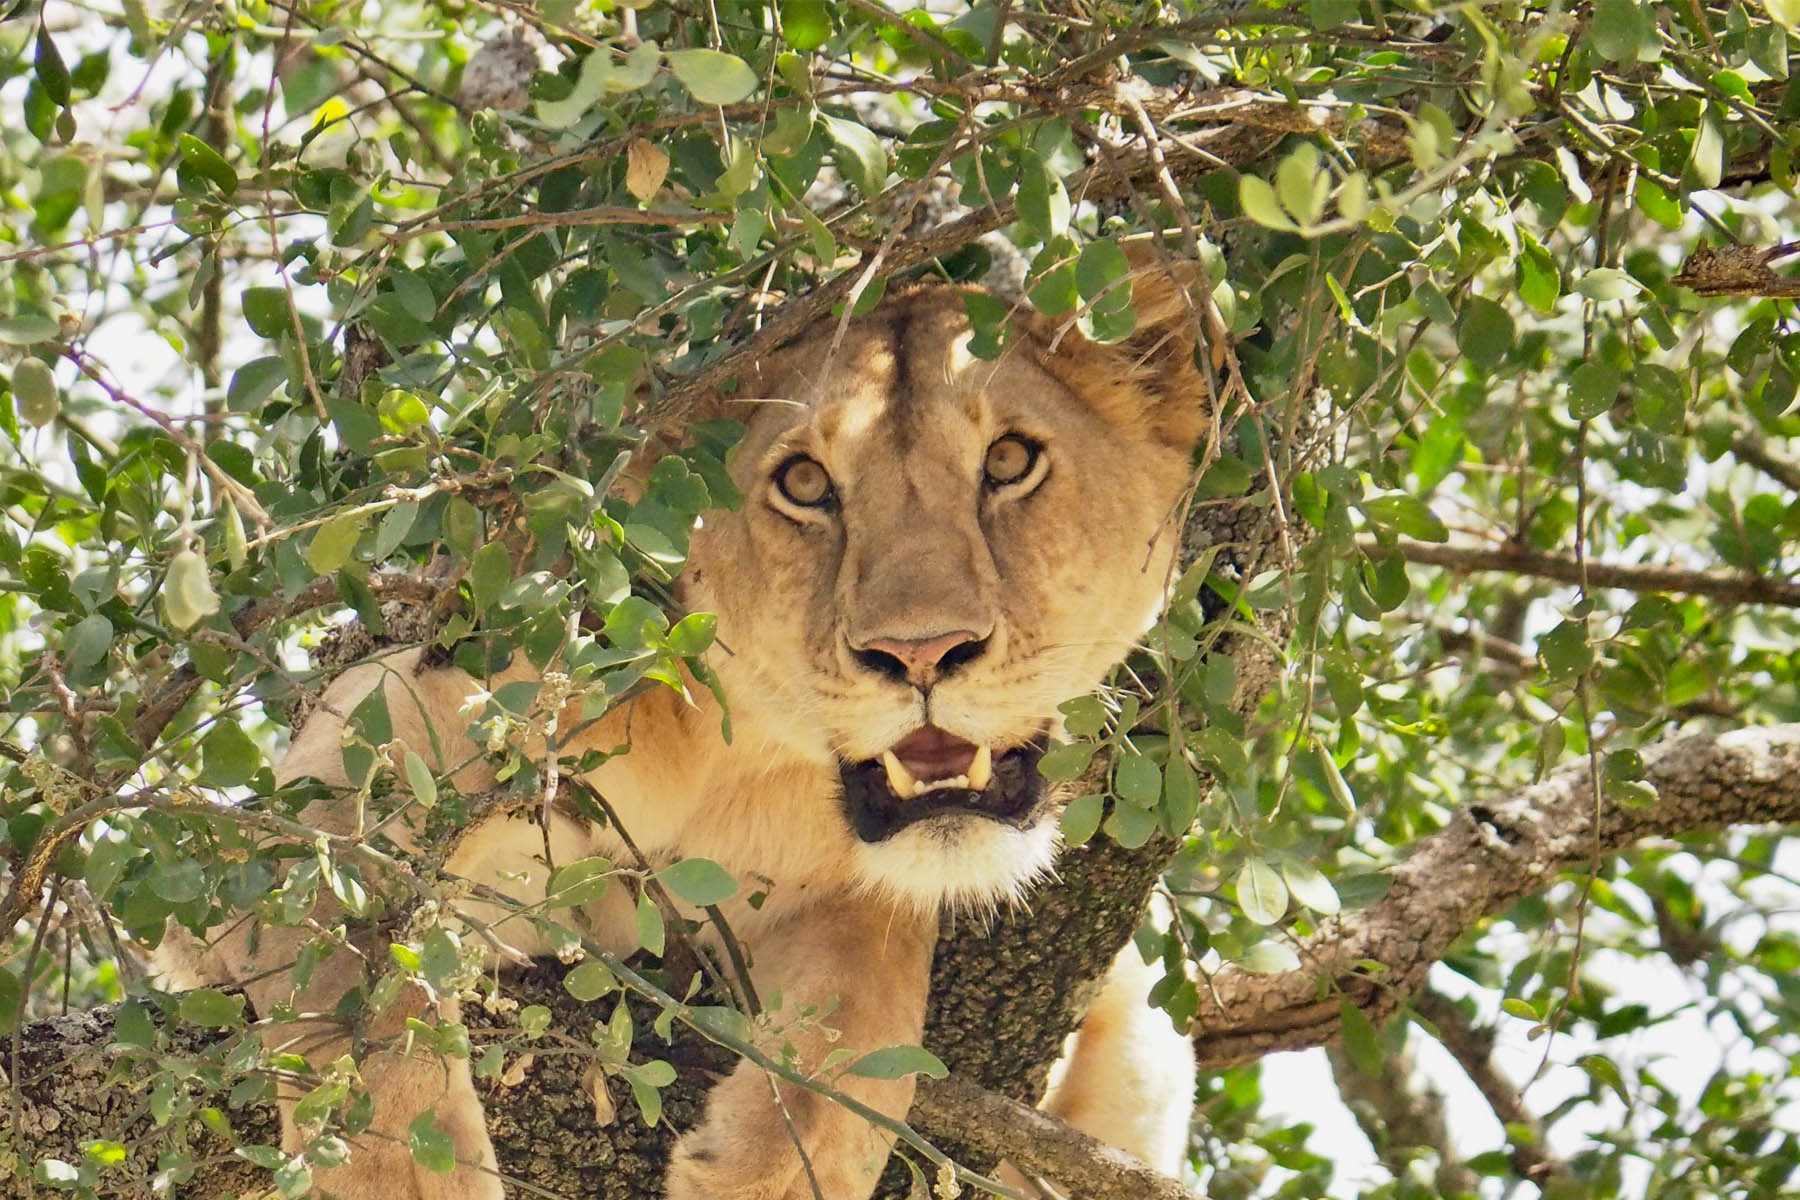 Queen Elizabeth tree climbing lions